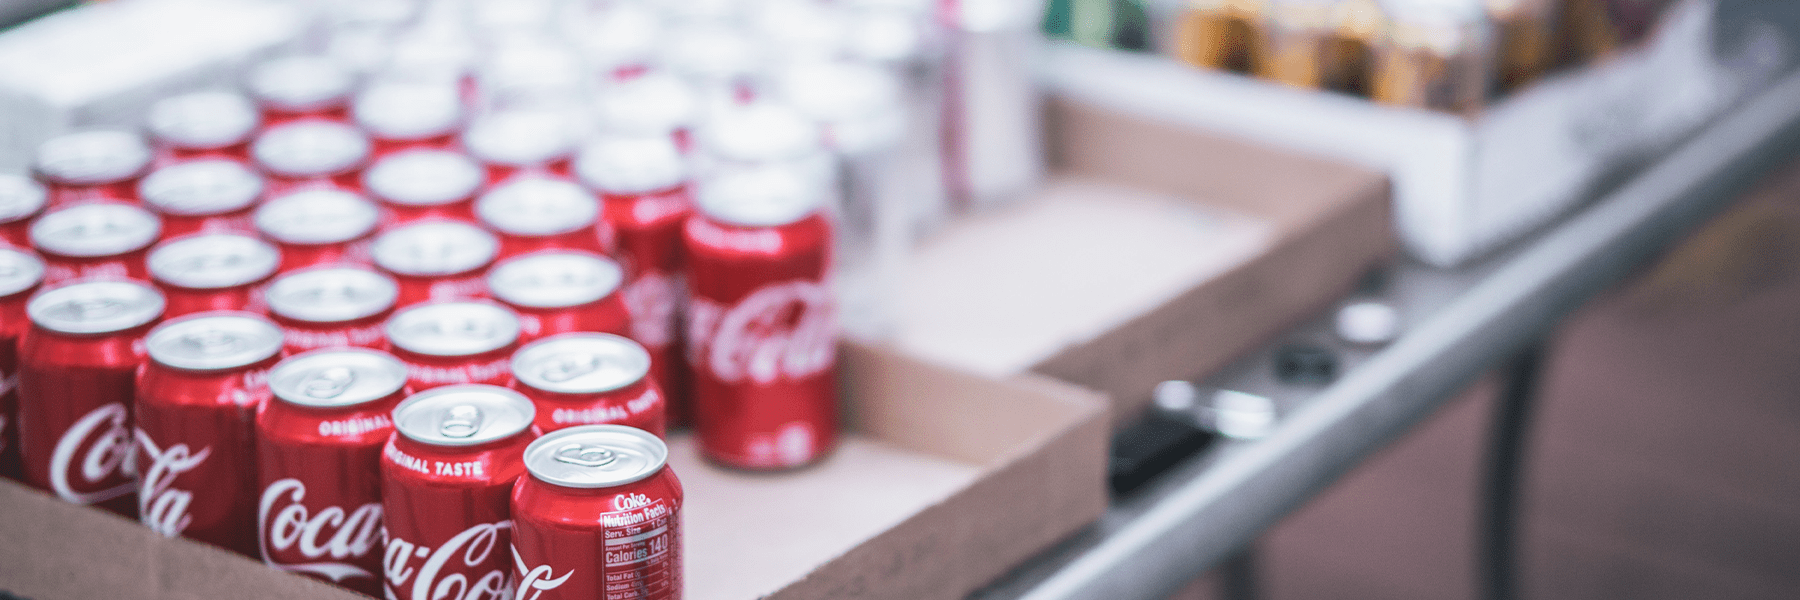 Une boîte contenant des canettes d'aluminium de Coca-Cola